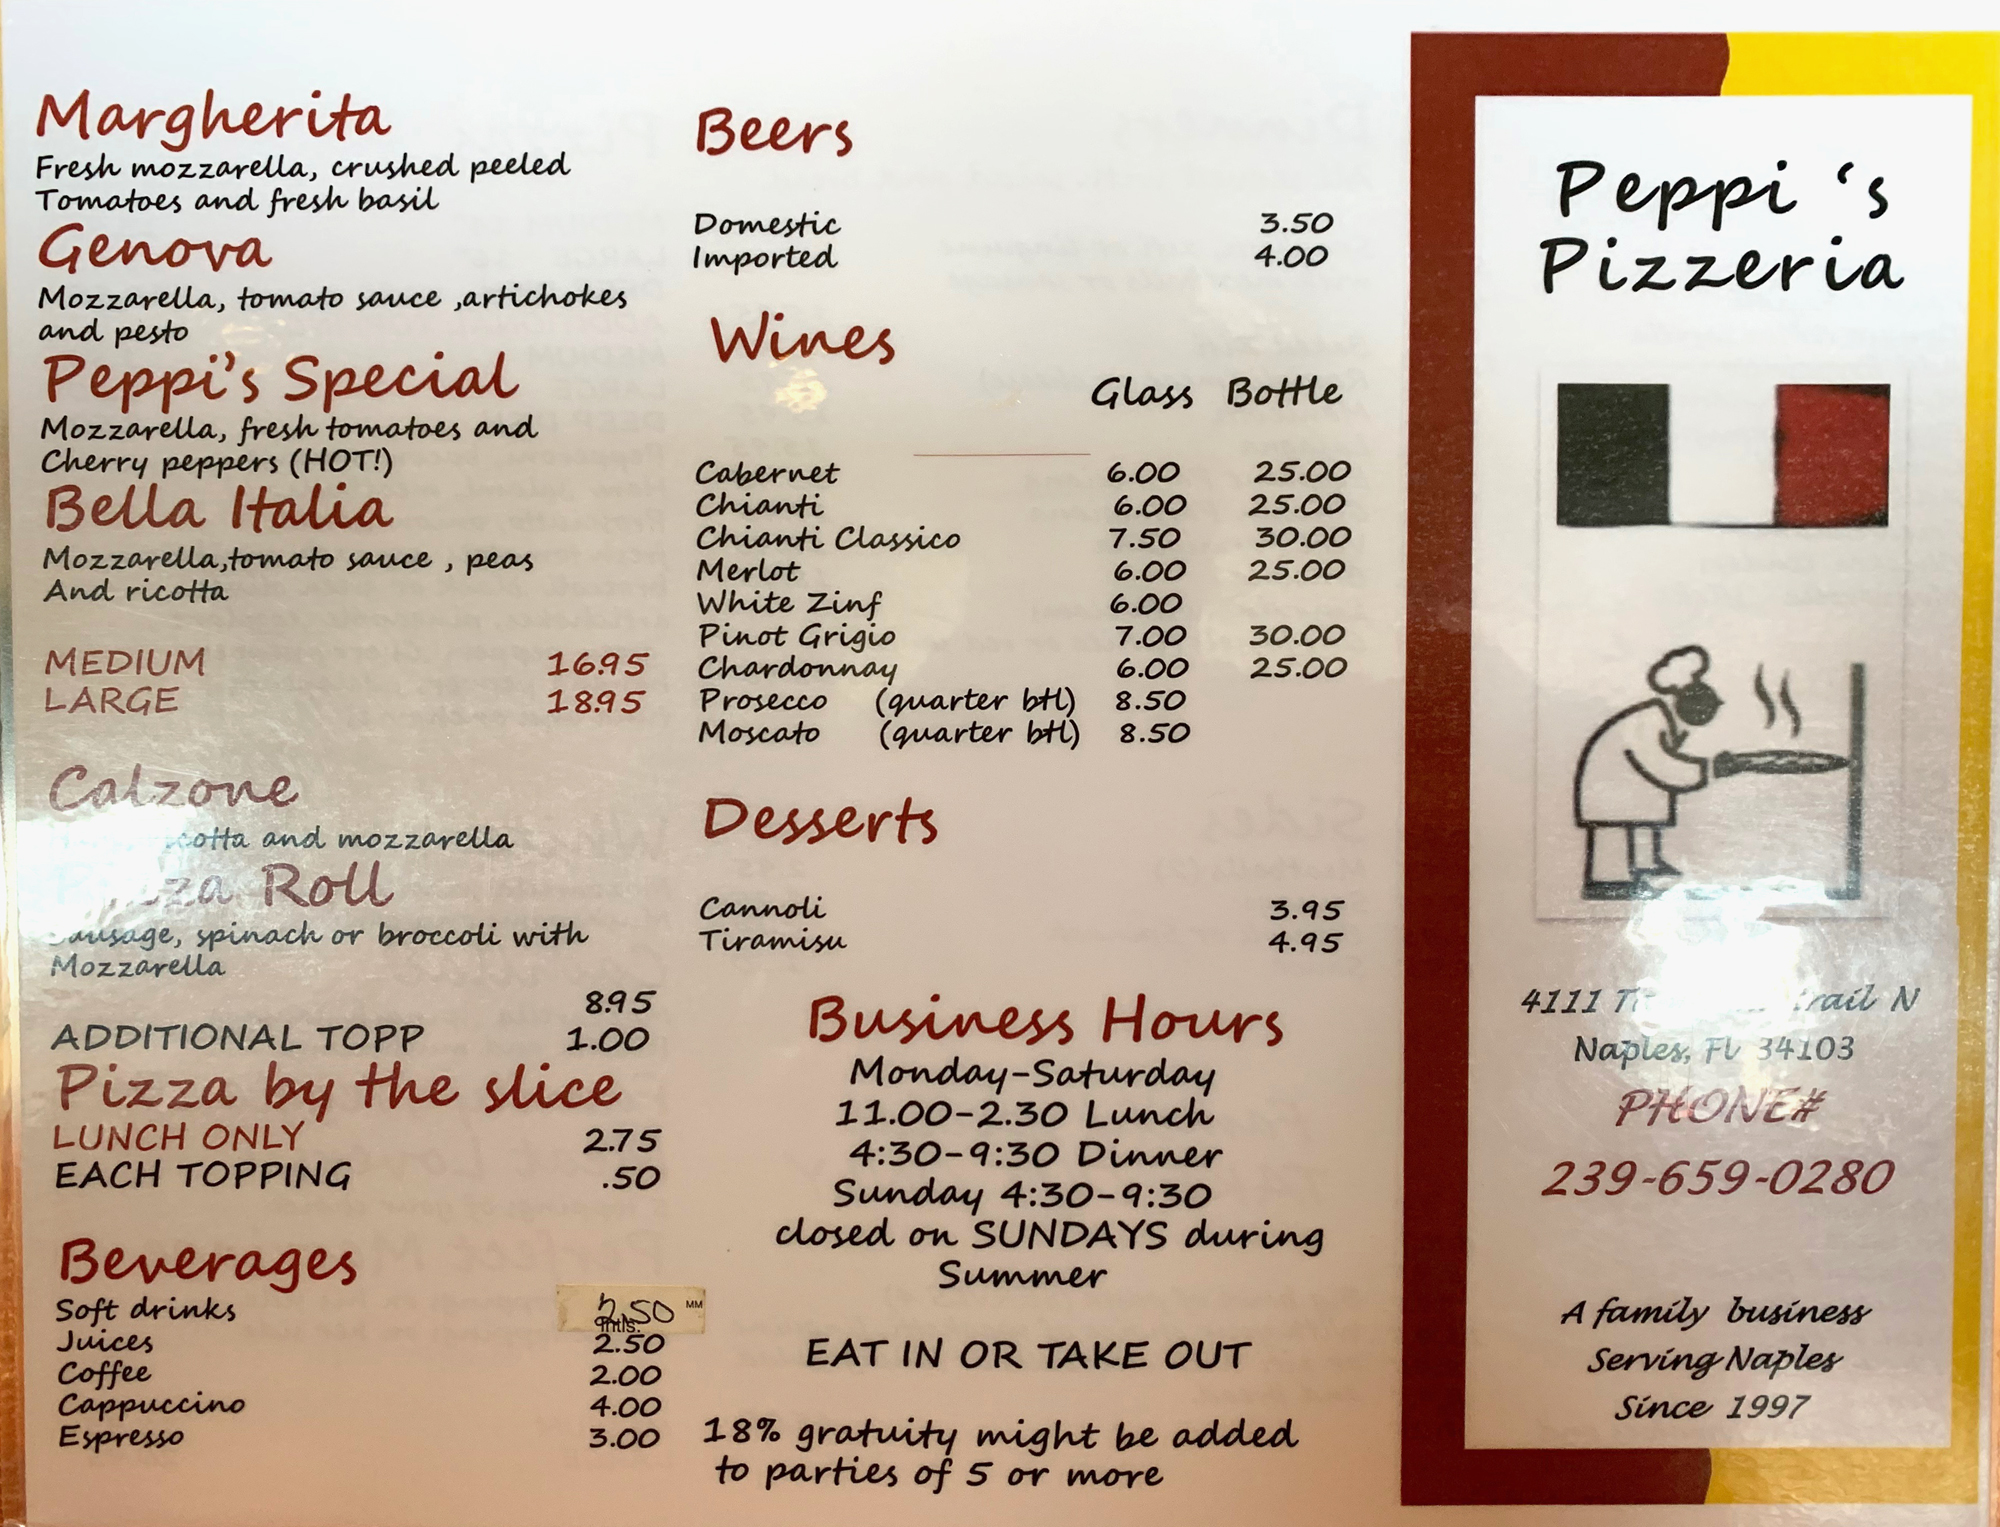 Peppi's Pizzeria